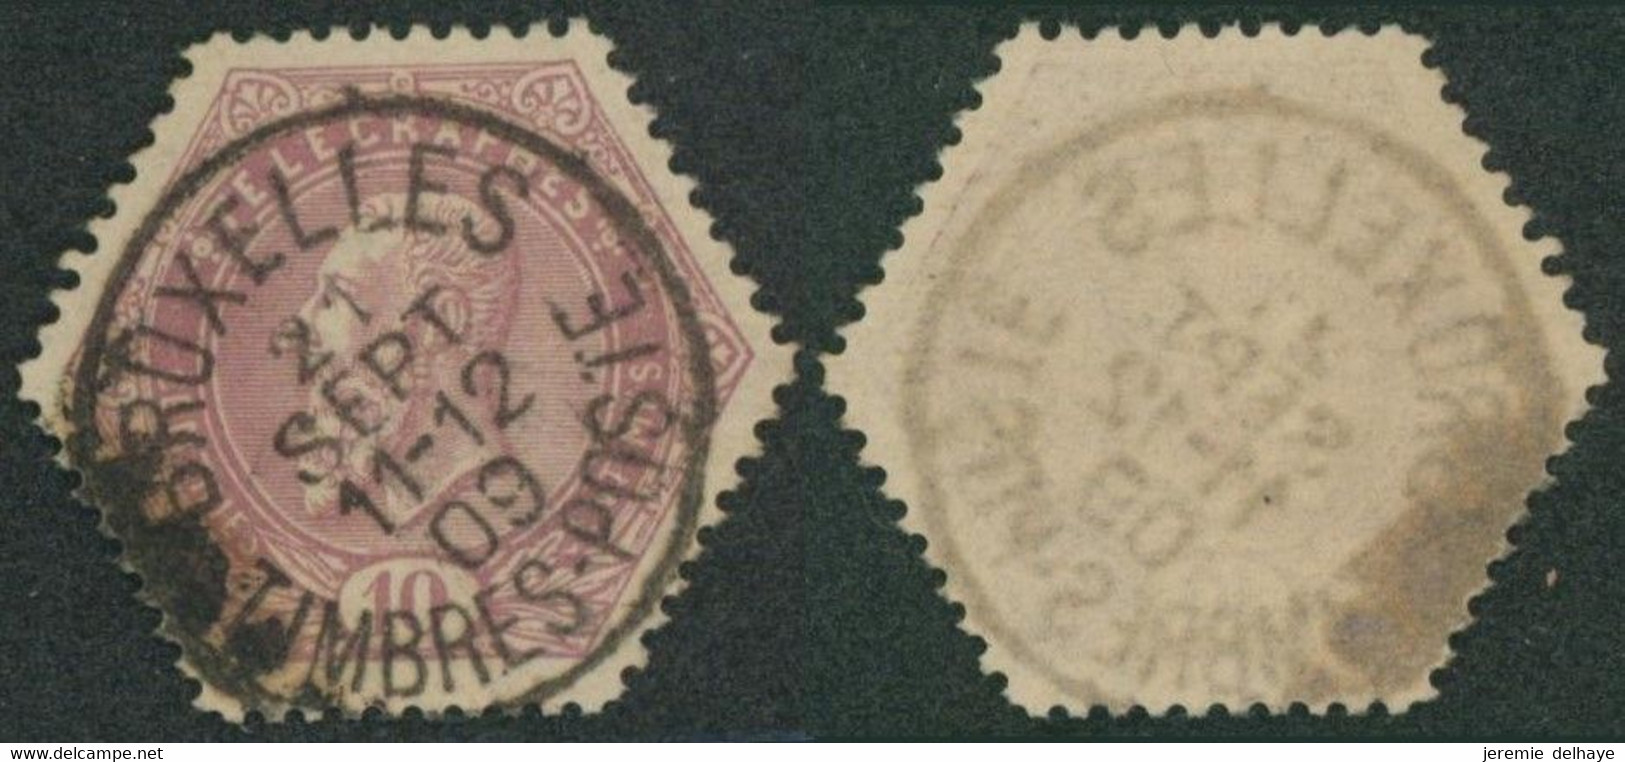 Télégraphe - TG11 Obl Simple Cercle "Bruxelles / Timbre-poste" (1909). Pas Courant, Rare. - Francobolli Telegrafici [TG]